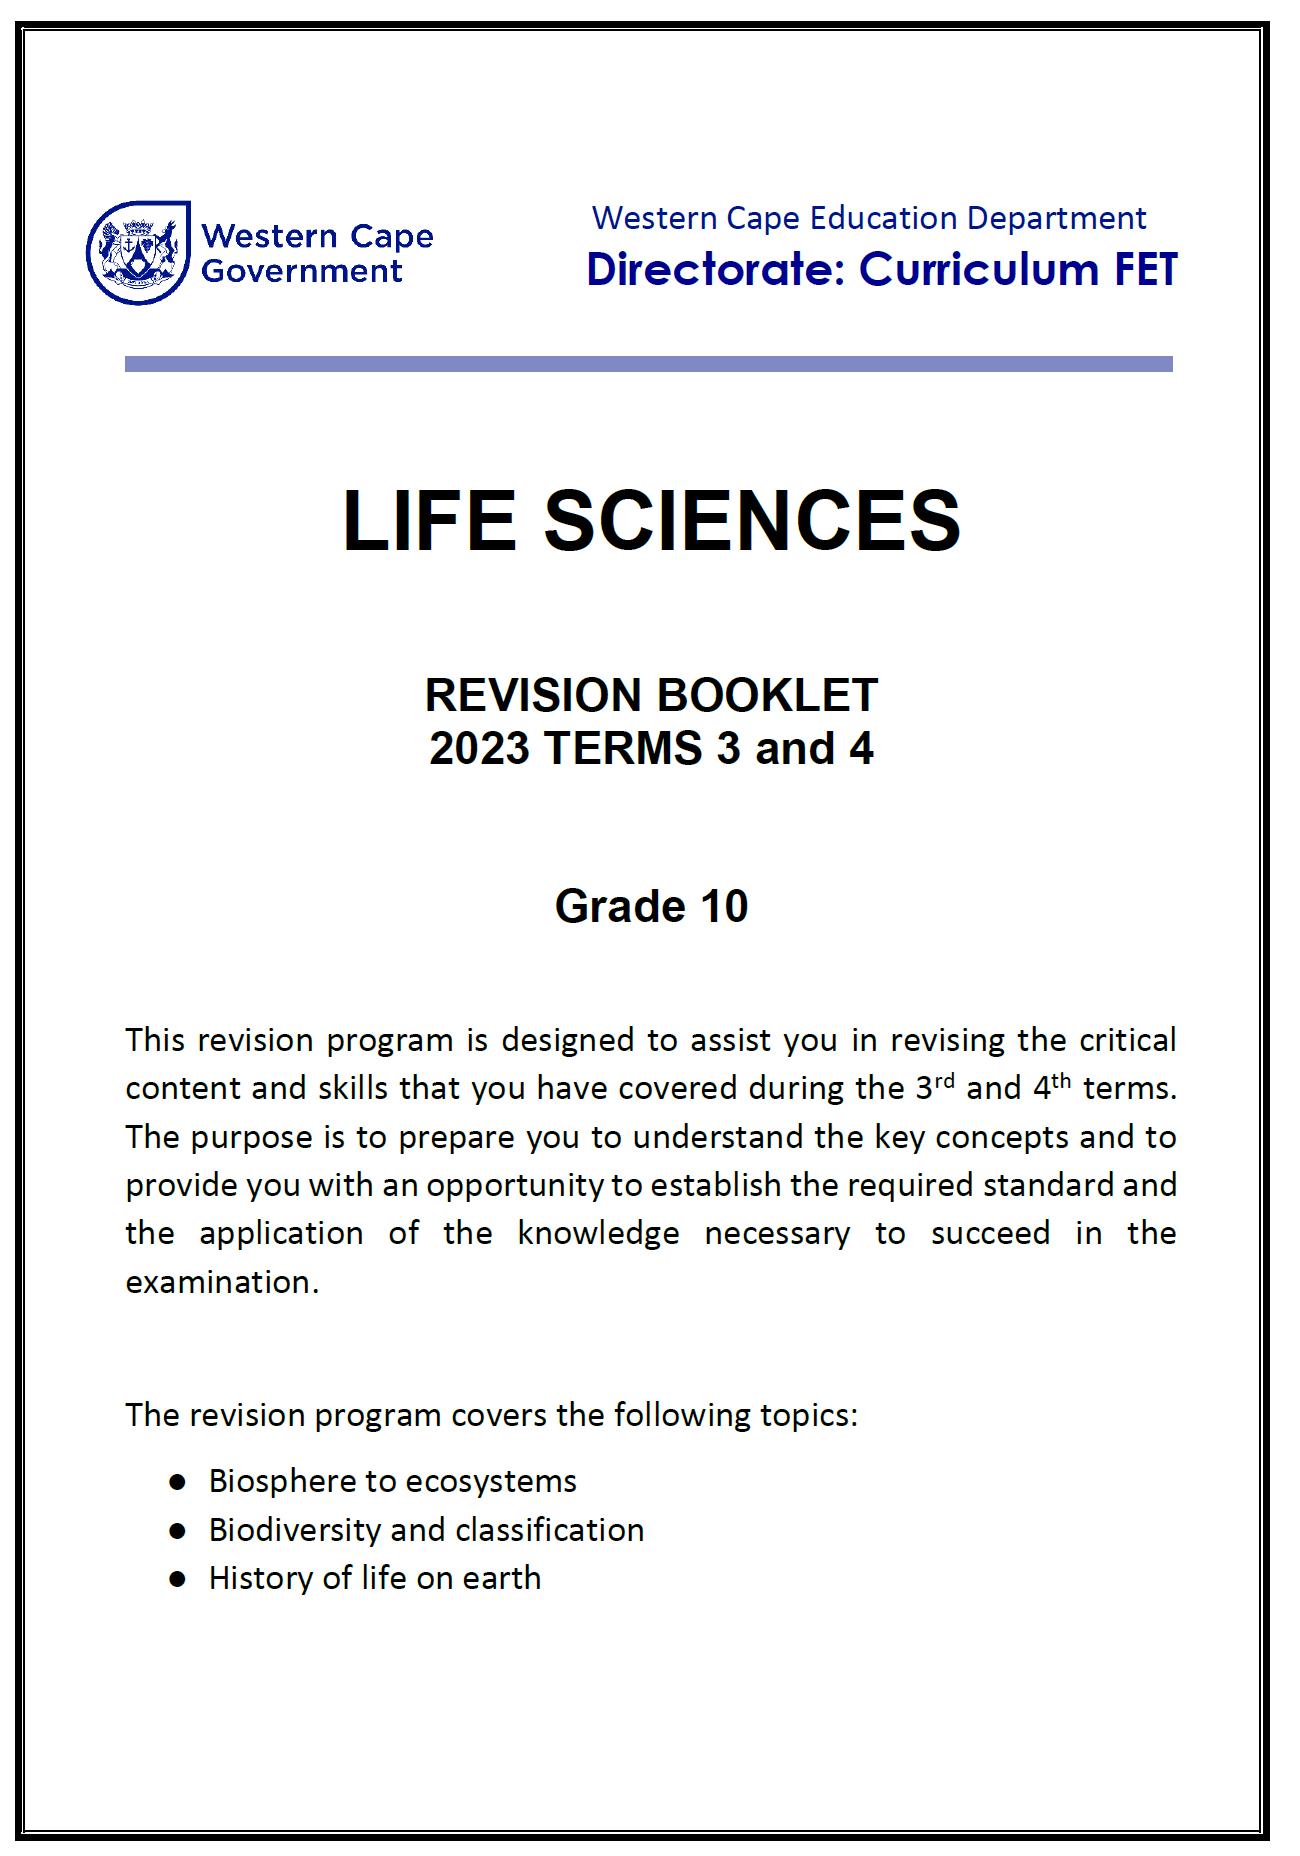 life sciences grade 10 assignment 2023